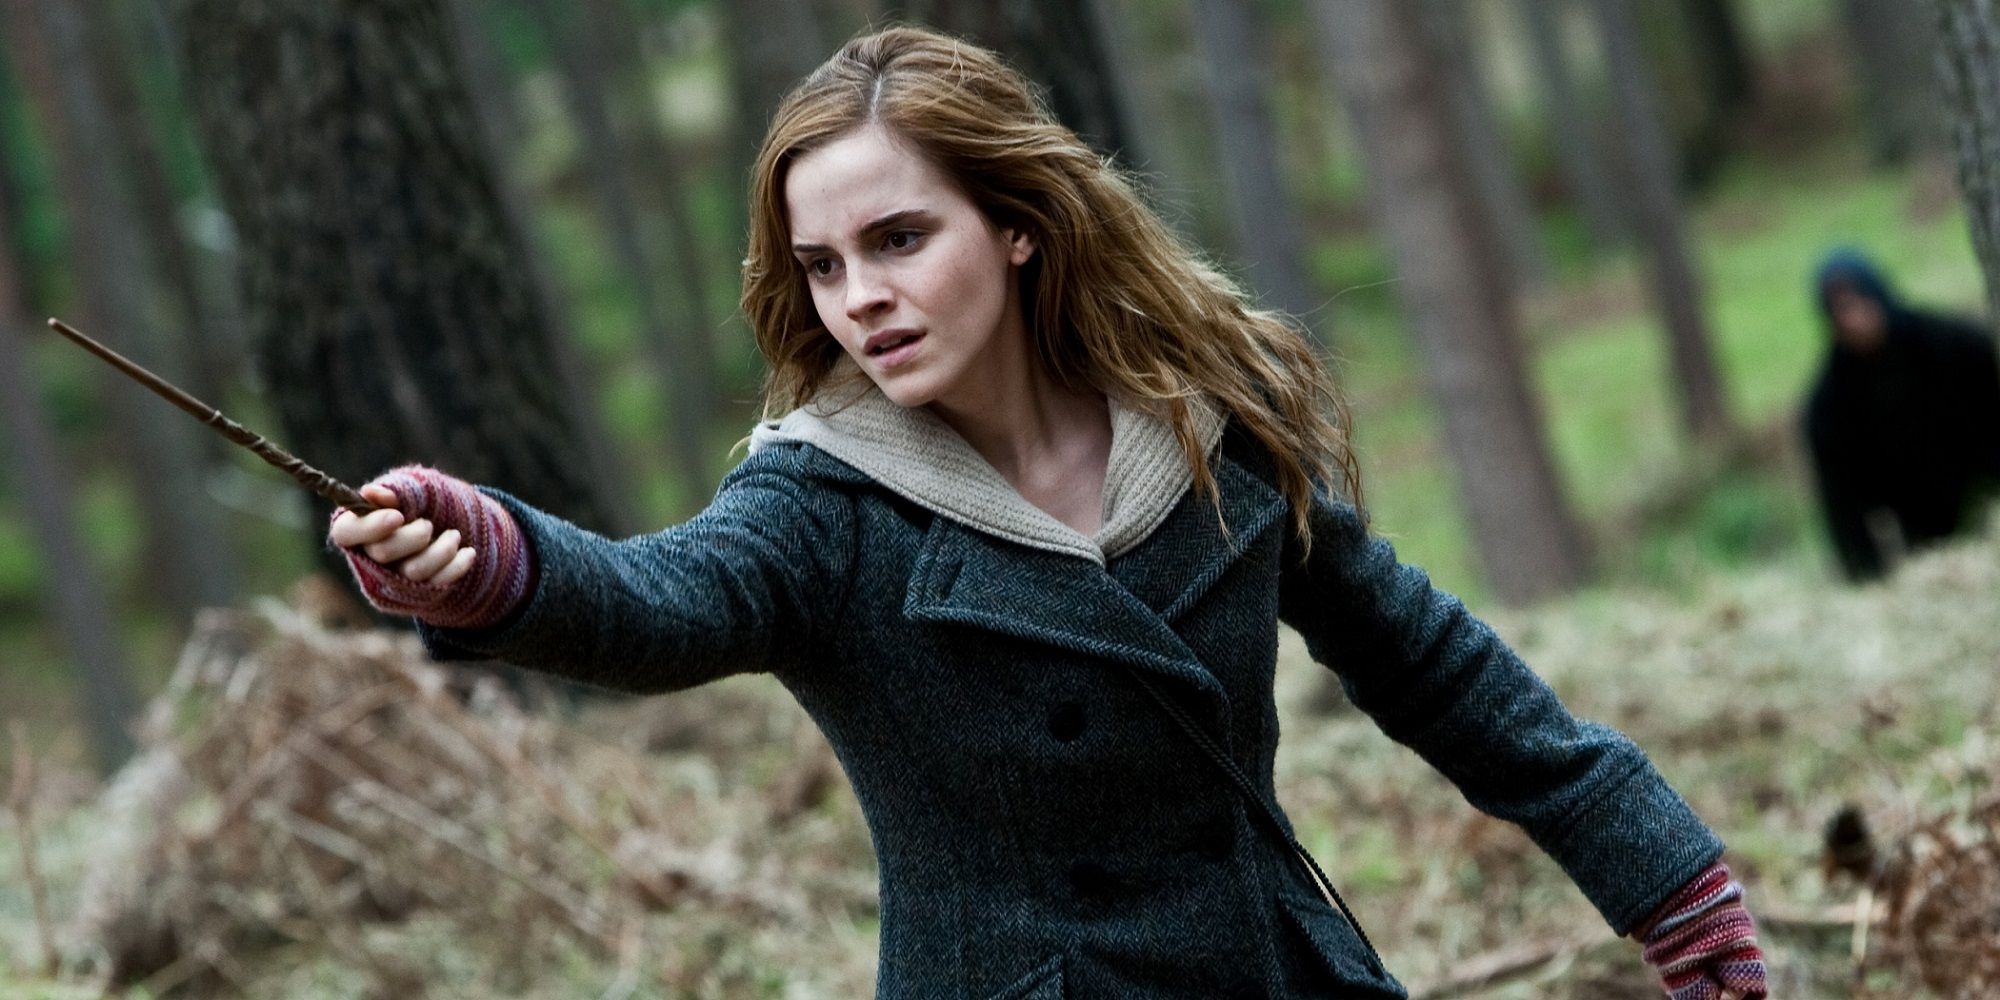 Emma Watson as Hermione Granger brandishing her wand in Harry Potter